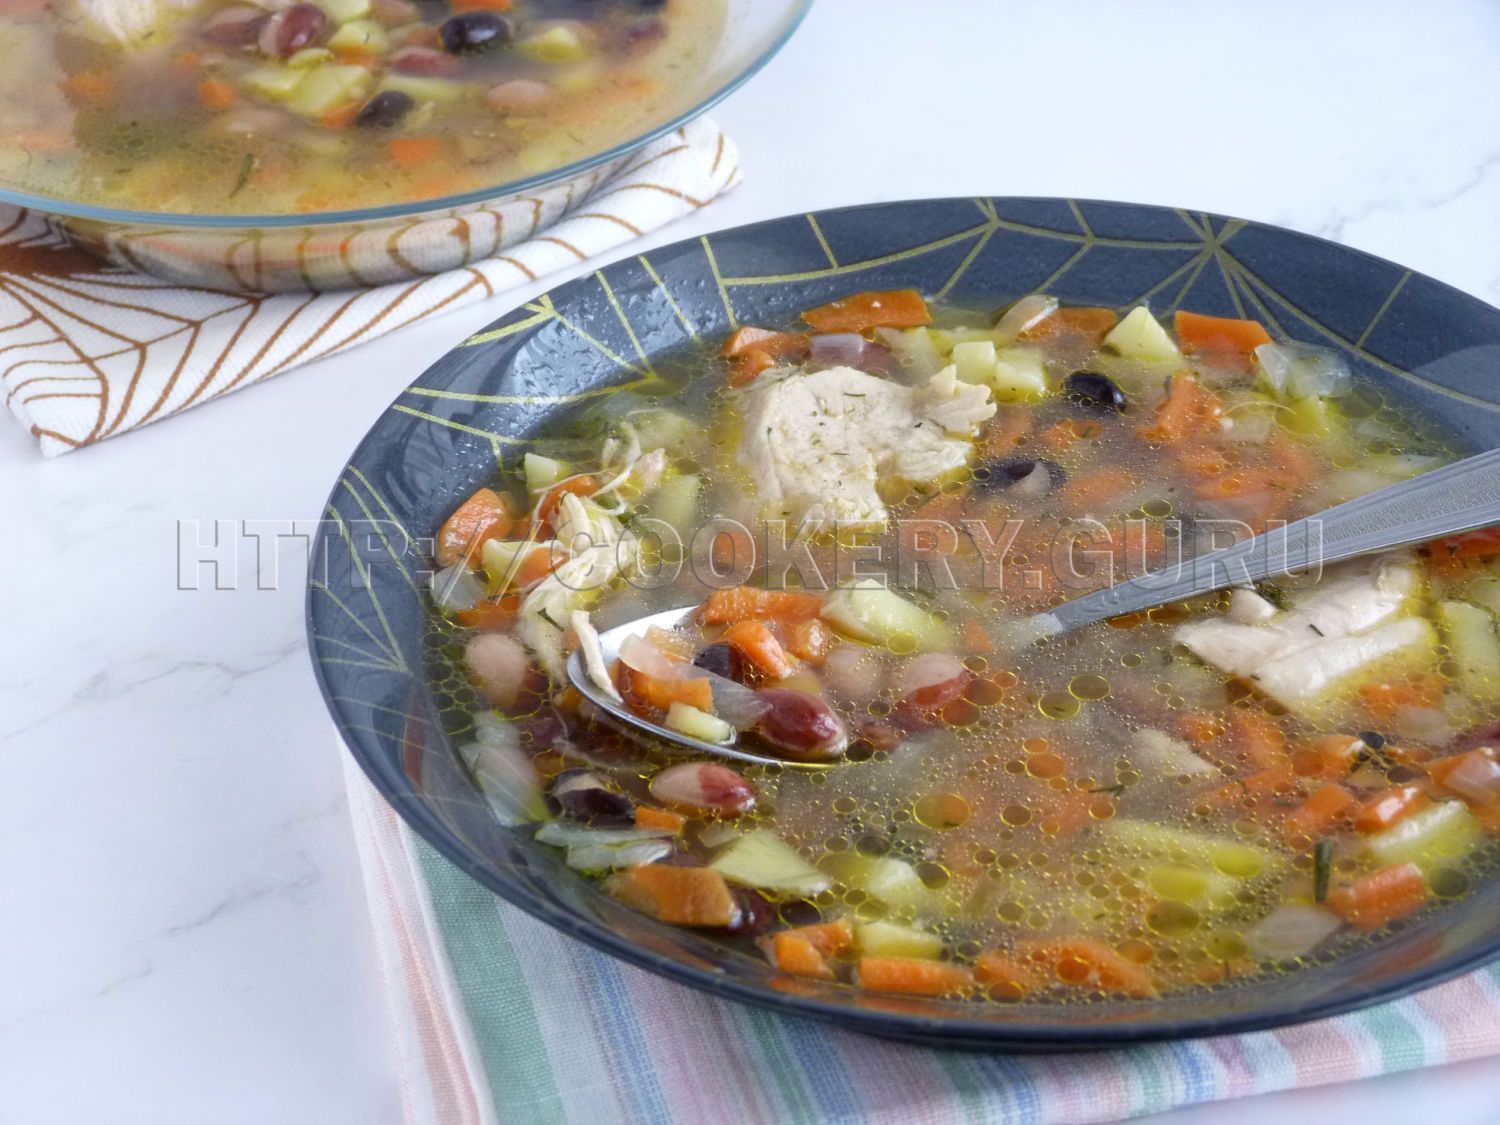 суп с фасолью, фасолевый суп, суп из красной фасоли, суп фасолевый из фасоли, суп фасоль курица, суп с фасолью фото, суп с фасолью и курицей, фасолевый суп с курицей, суп фасолевый с курицей, простой вкусный суп из фасоли, куриный суп с фасолью, классический фасолевый суп, вкусный суп с фасолью, суп из сухой фасоли, фасолевый суп рецепт с фото, фасолевый суп с курицей с фасолью, суп из фасоли красной сухой, суп с картошкой и фасолью, как сварить суп с фасолью, суп с красной фасолью и курицей, вкусный фасолевый суп, суп с красной фасоли с фото, суп курица фасоль картошка, куриный суп с фасолью красной, суп фасолевый с курицей и картошкой, суп фасолевый с курицей фото, куриный суп с картошкой и фасолью